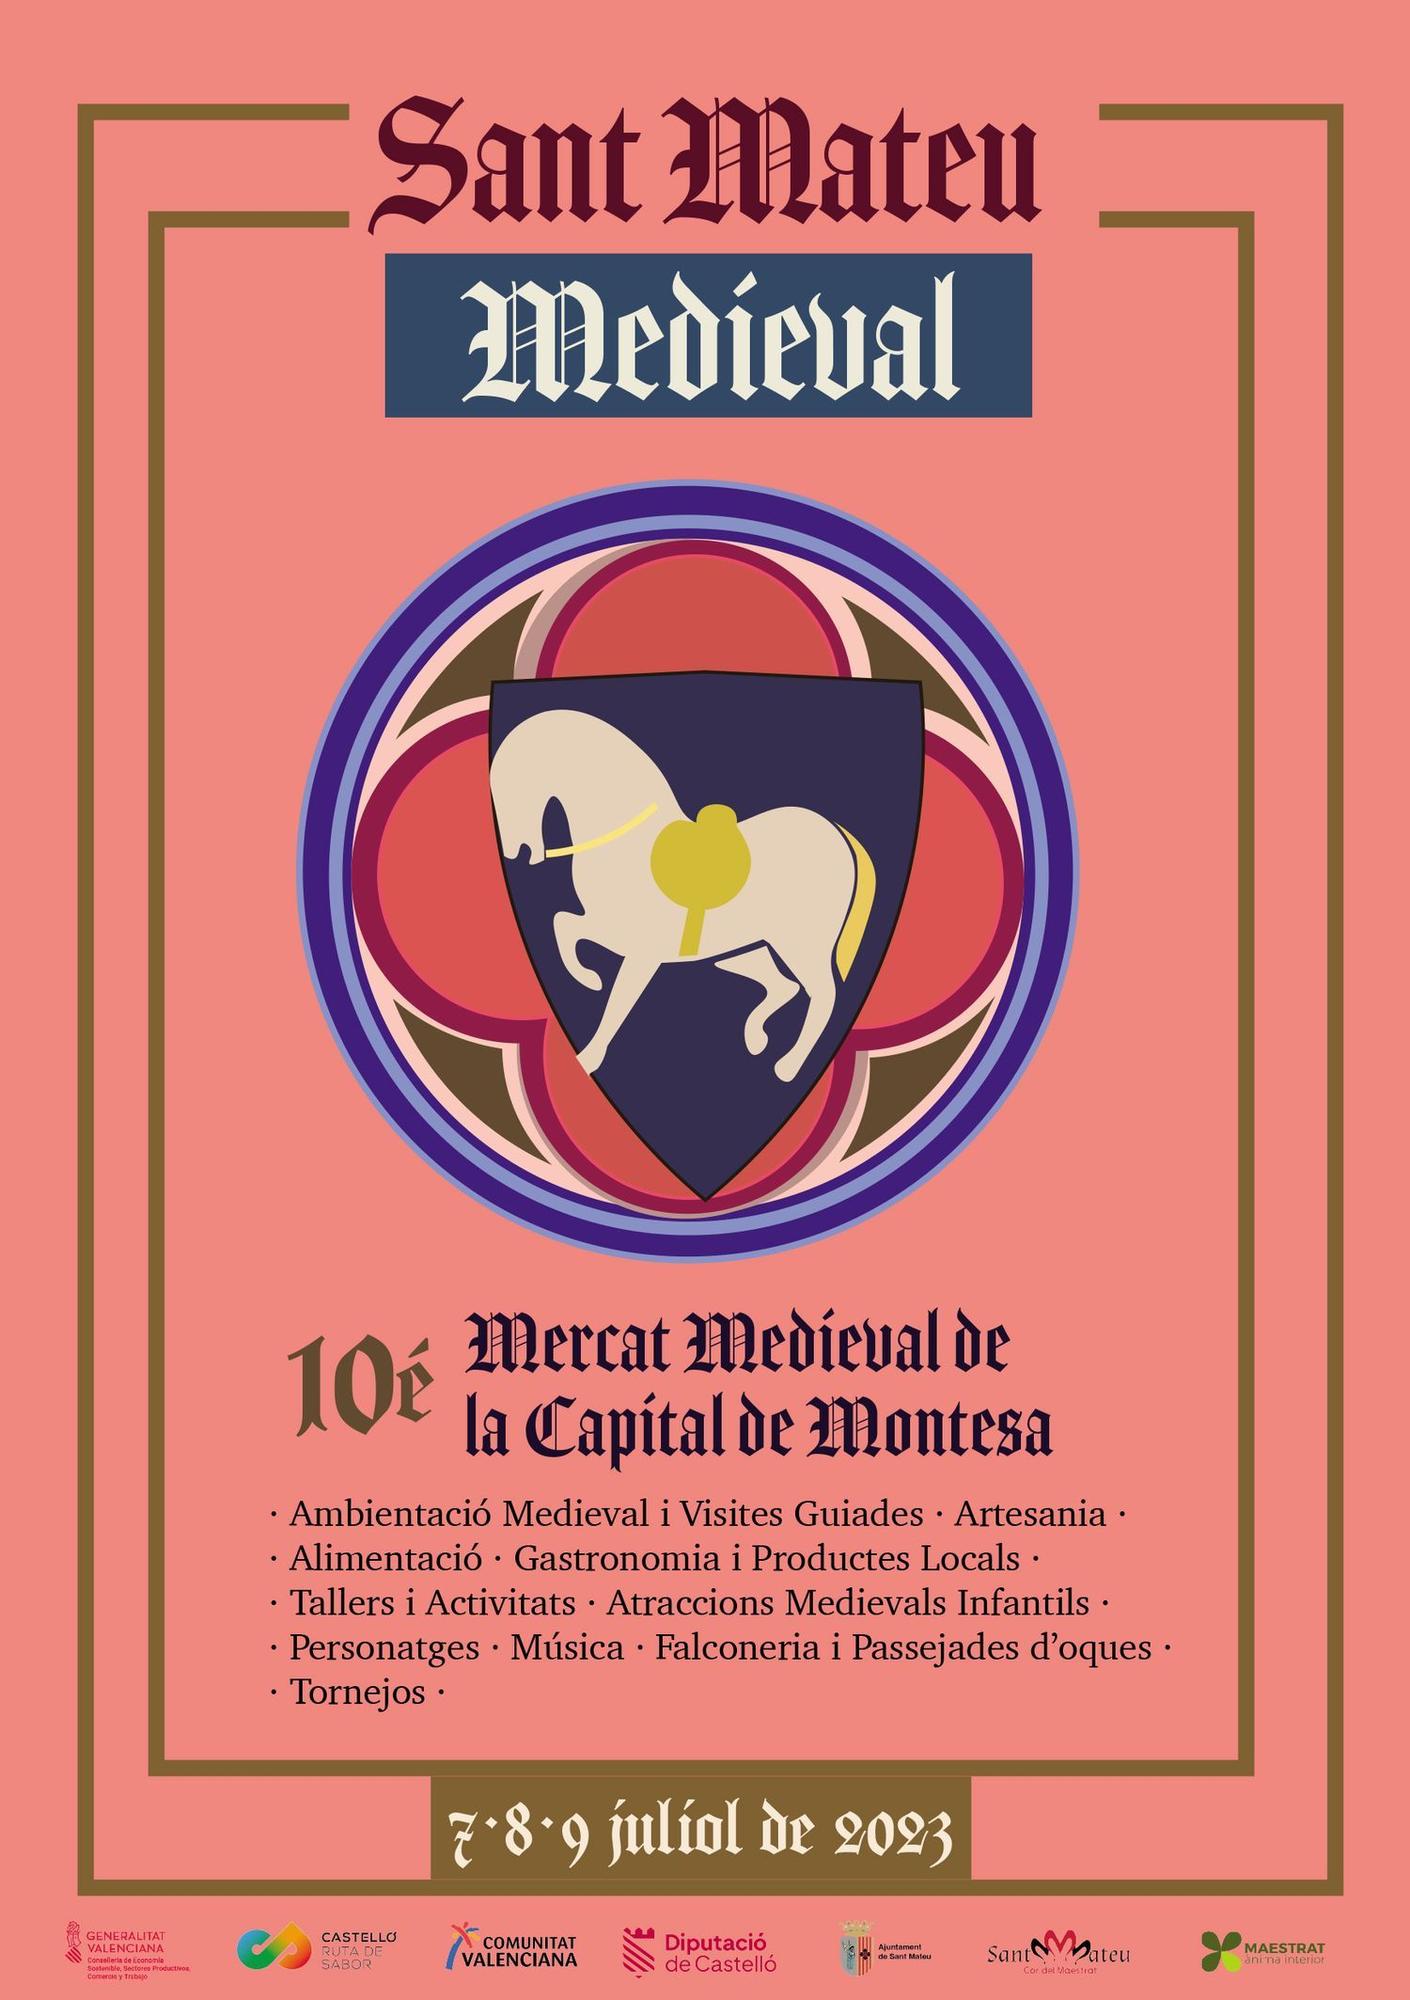 Cartel anunciador de Sant Mateu Medieval 2023.